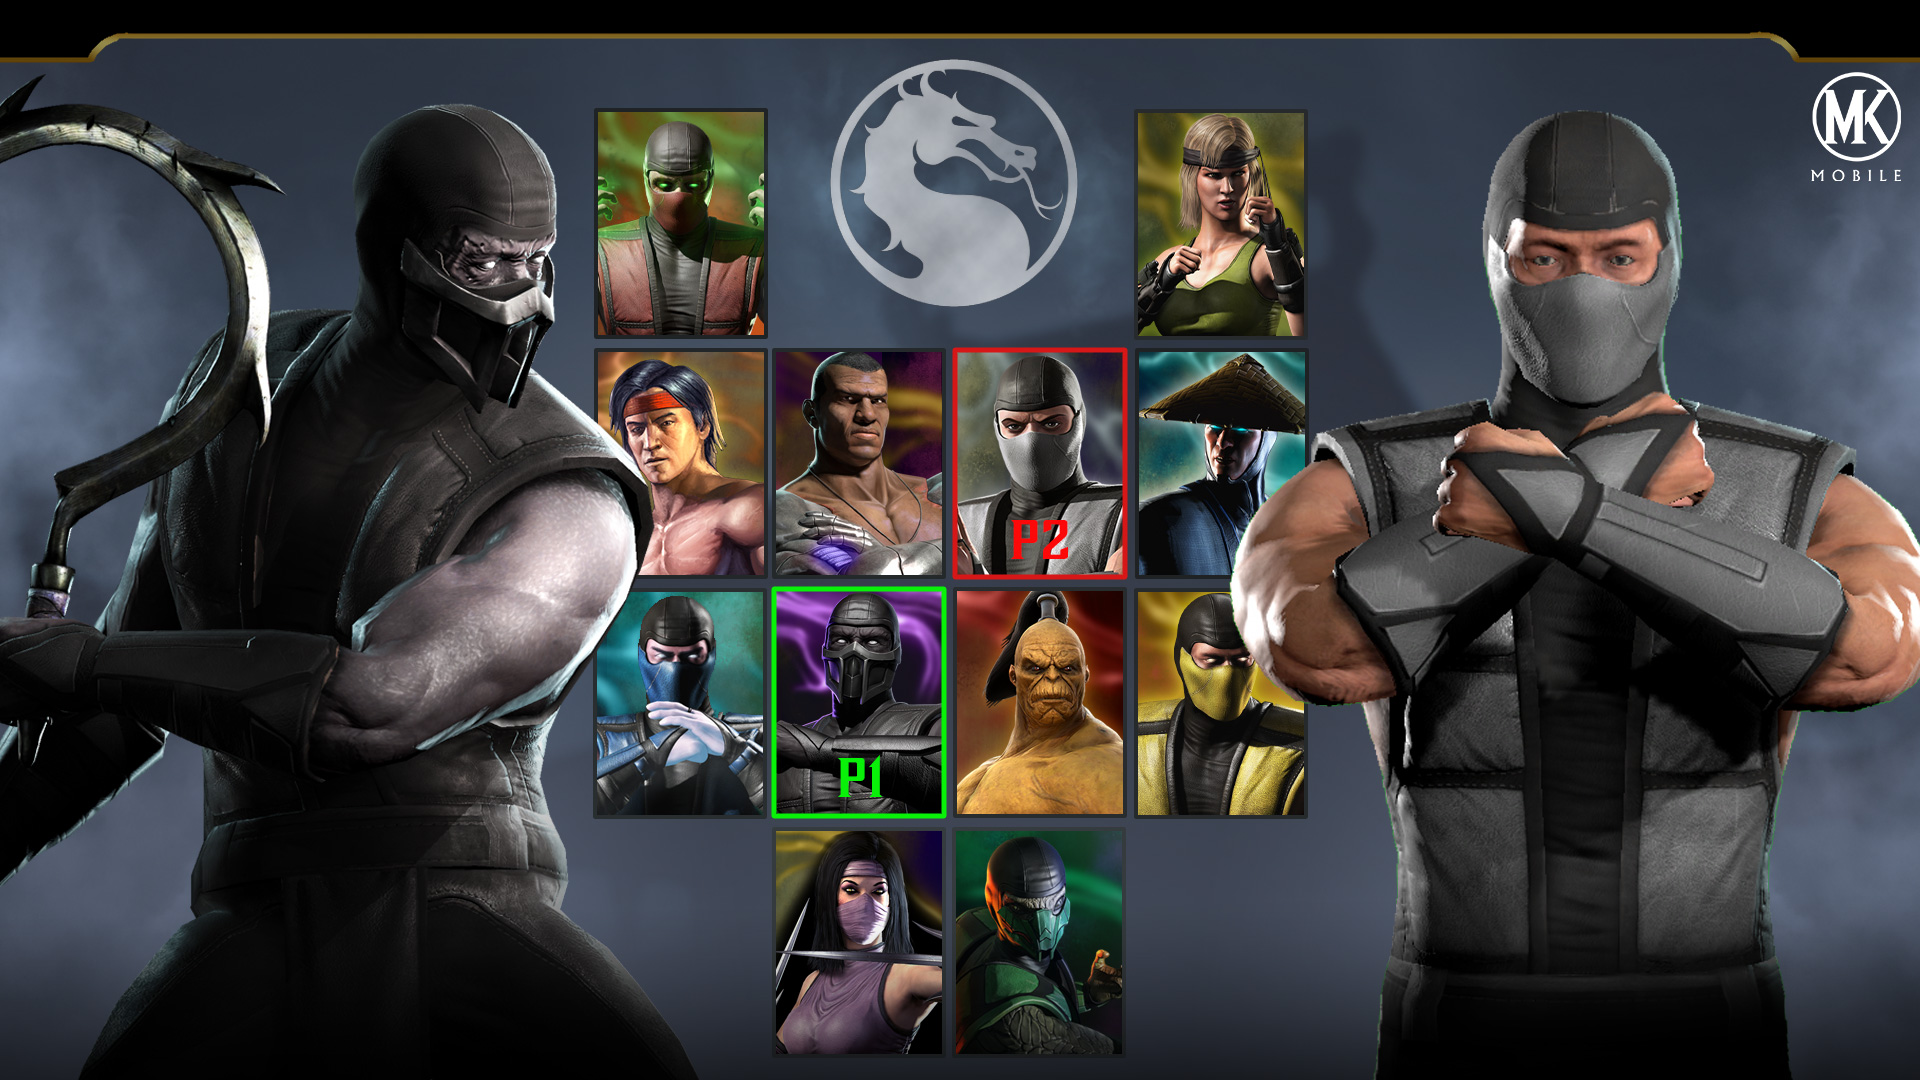 Team Scorpion Fatality Mortal Kombat Pro Kompetition